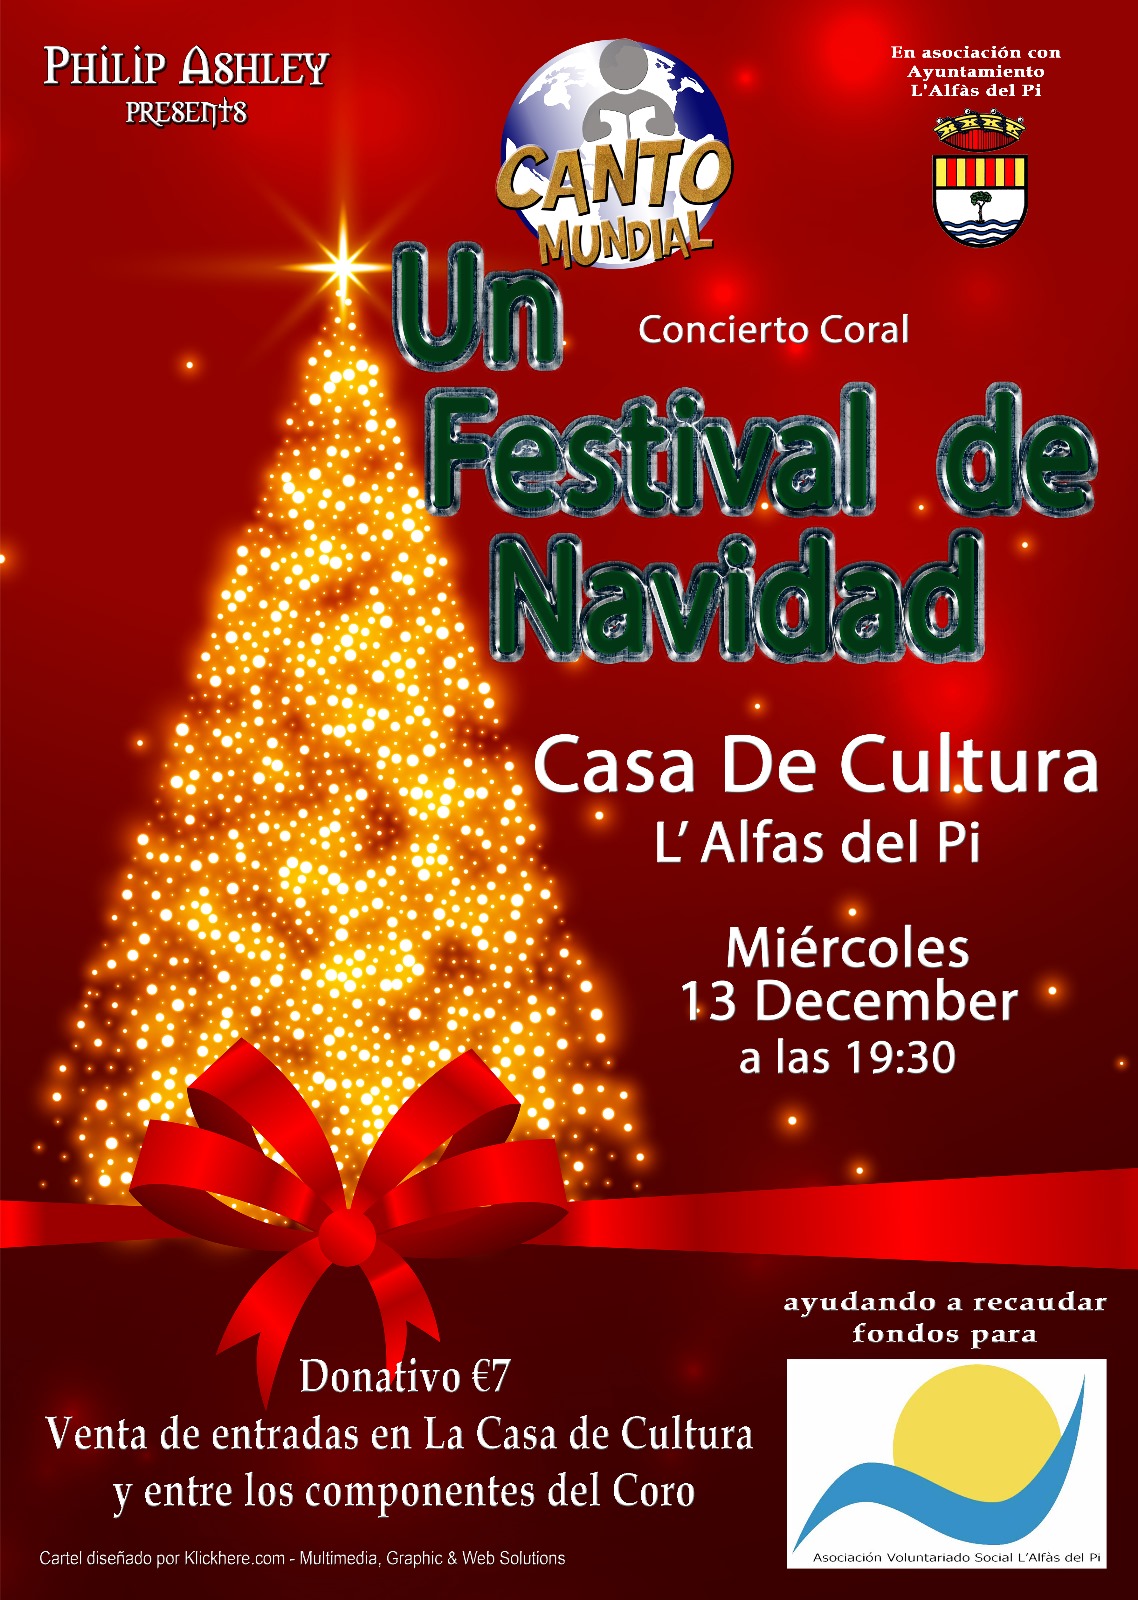 Cultura_concierto canto mundial navidad cartel